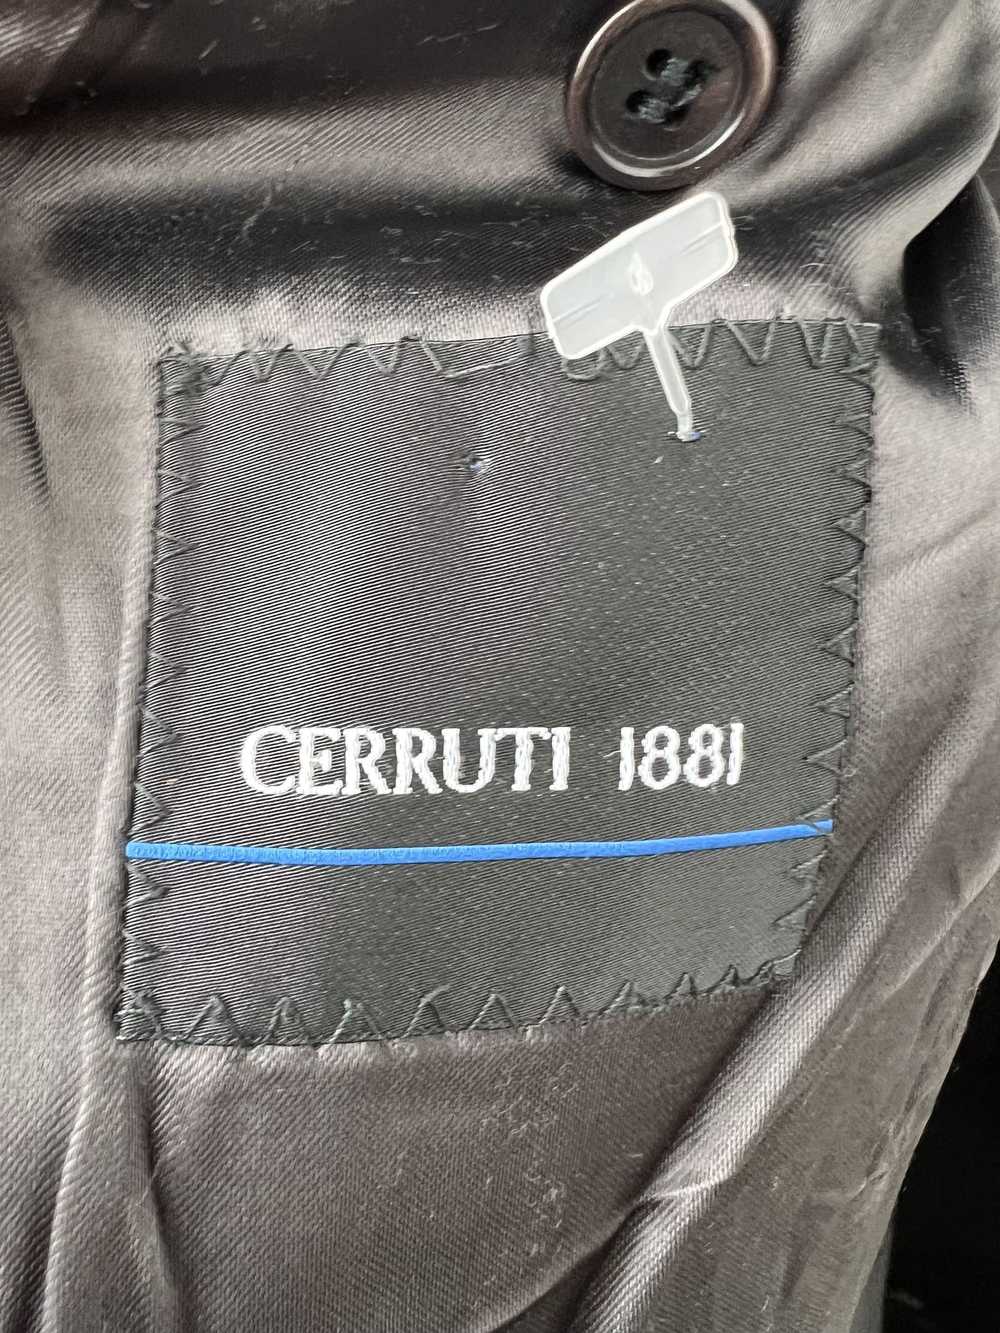 Cerruti 1881 Cerruti 1881 Wool Coat 52 - image 4